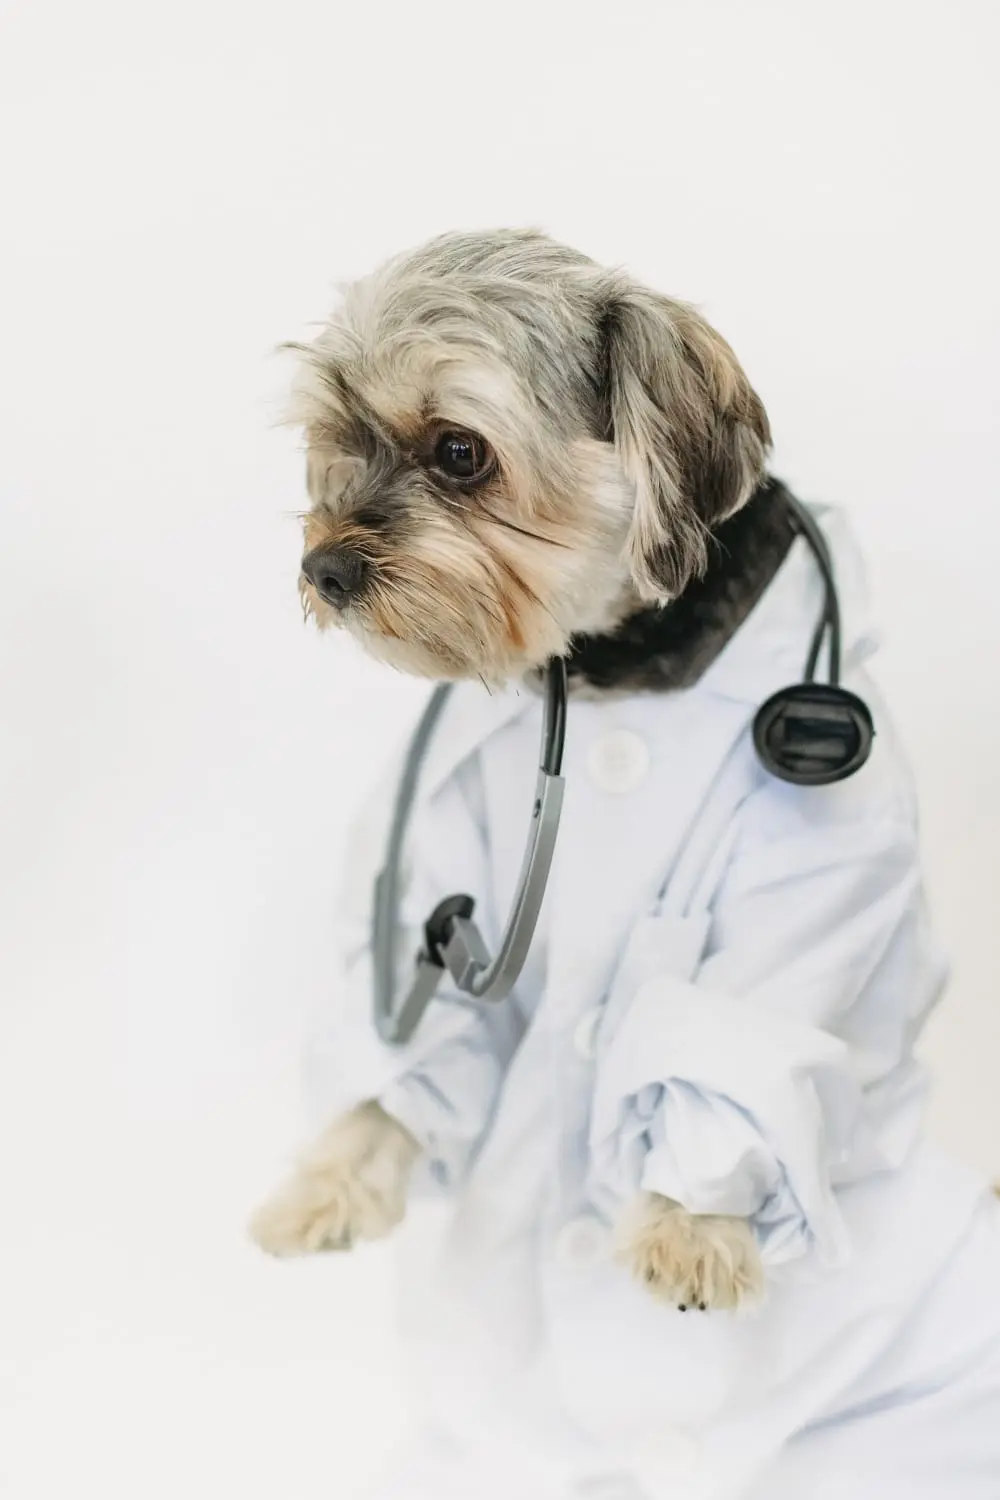 Hund im Arztoutfit